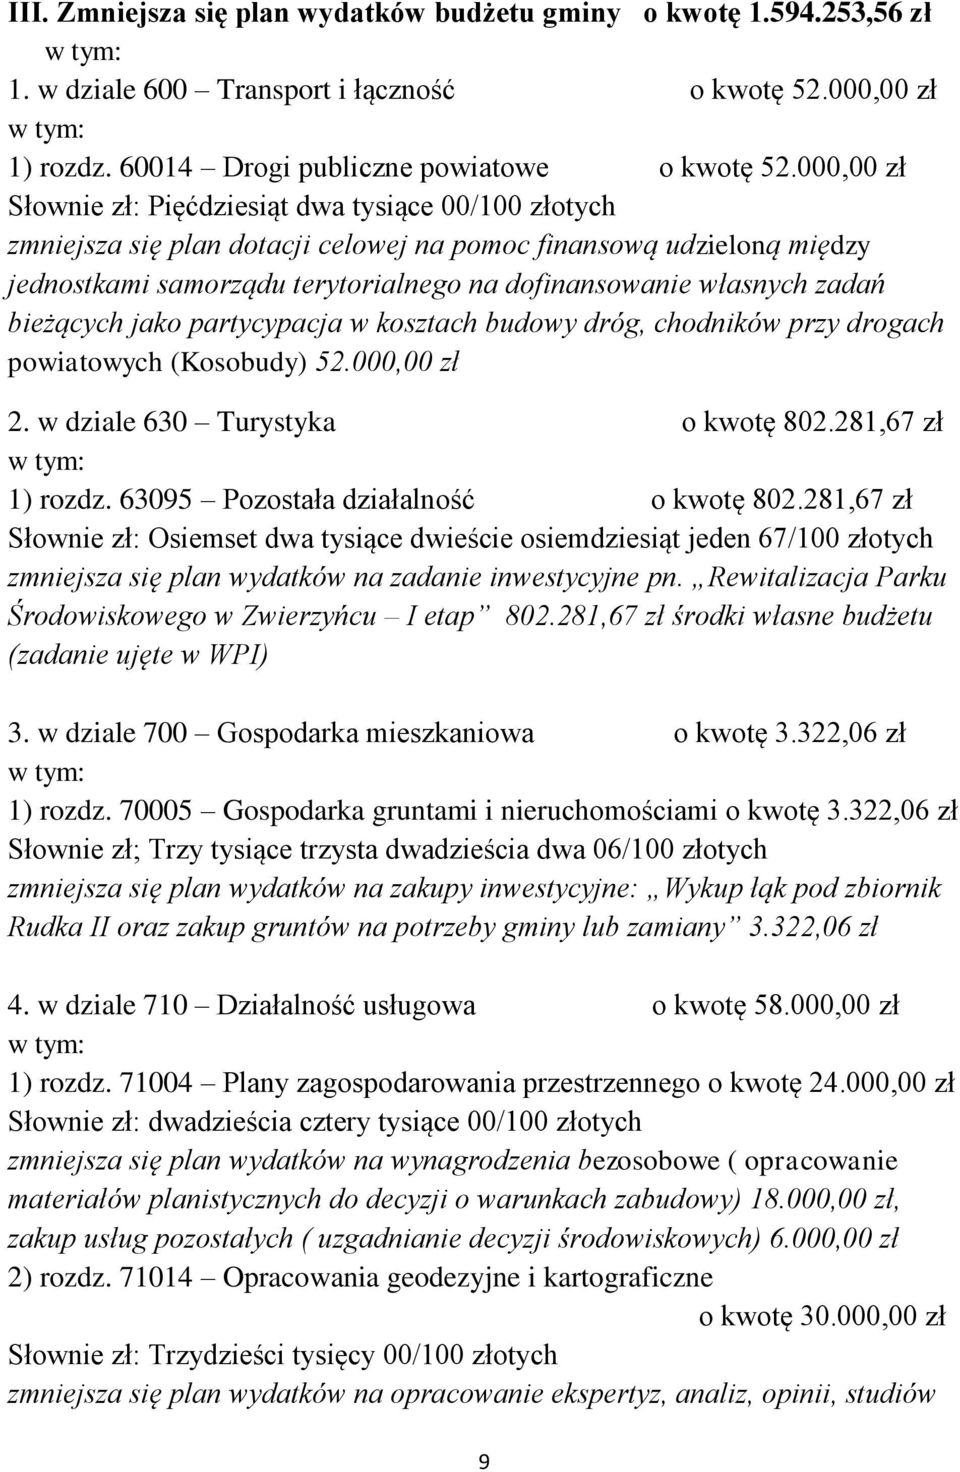 zadań bieżących jako partycypacja w kosztach budowy dróg, chodników przy drogach powiatowych (Kosobudy) 52.000,00 zł 2. w dziale 630 Turystyka o kwotę 802.281,67 zł 1) rozdz.